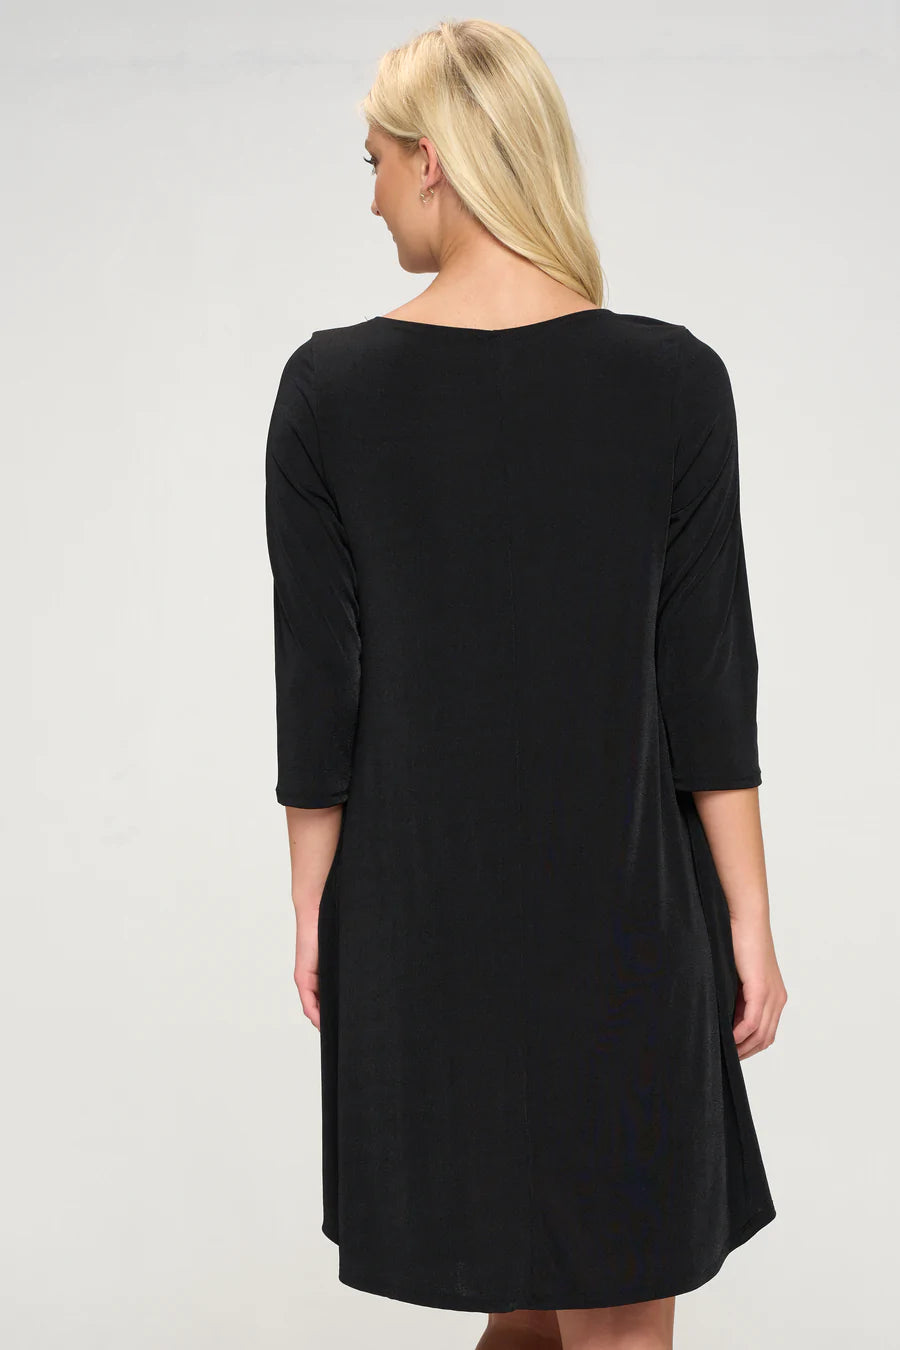 019- Jostar Black Pocket Dress